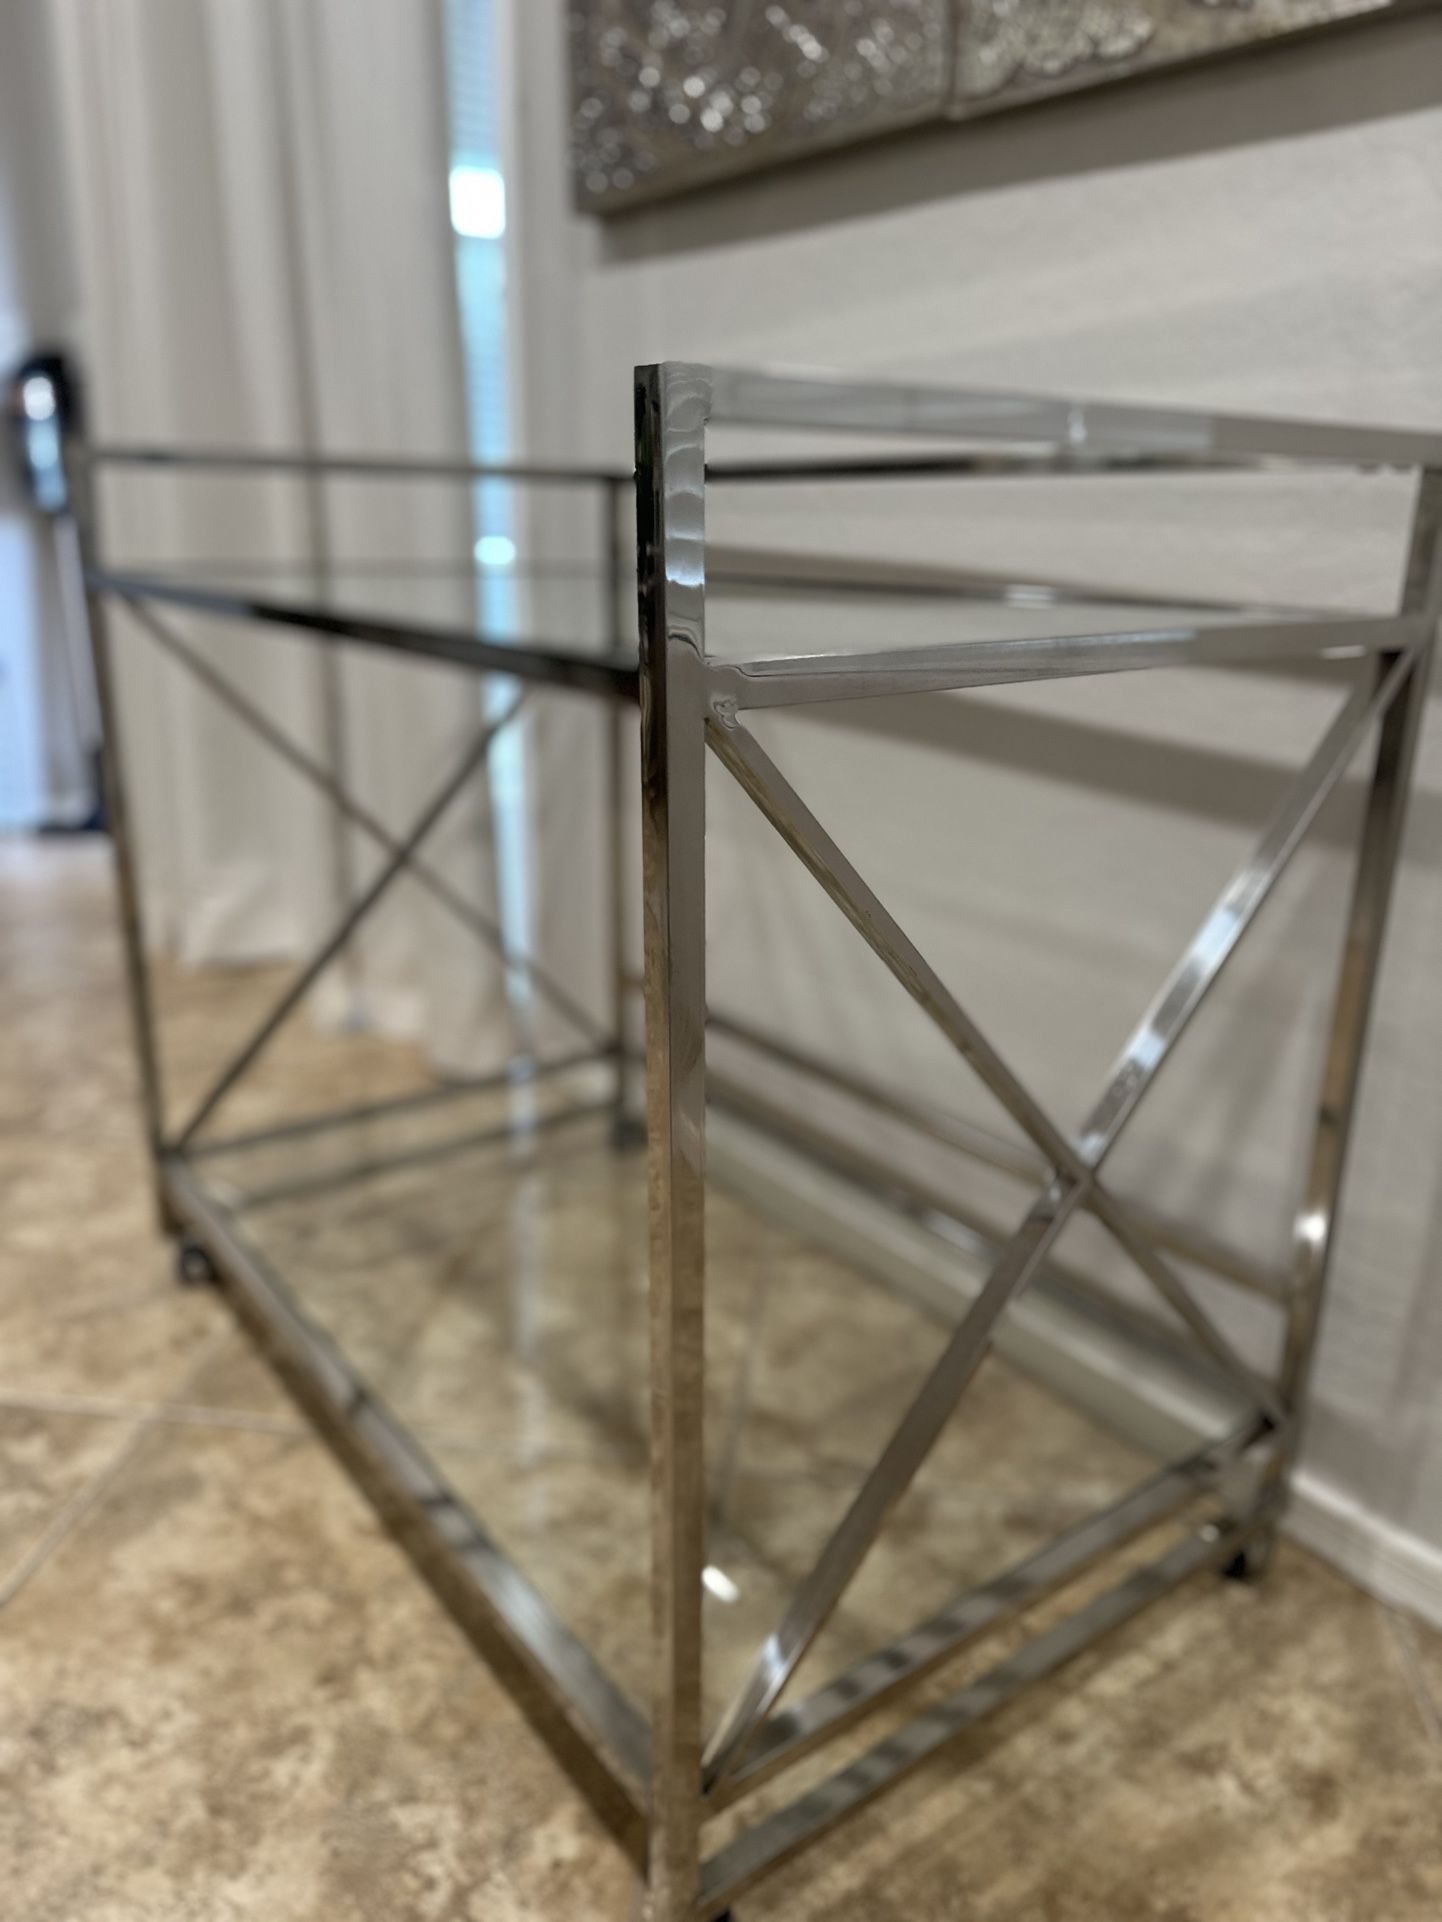 Glass Bar Cart $150